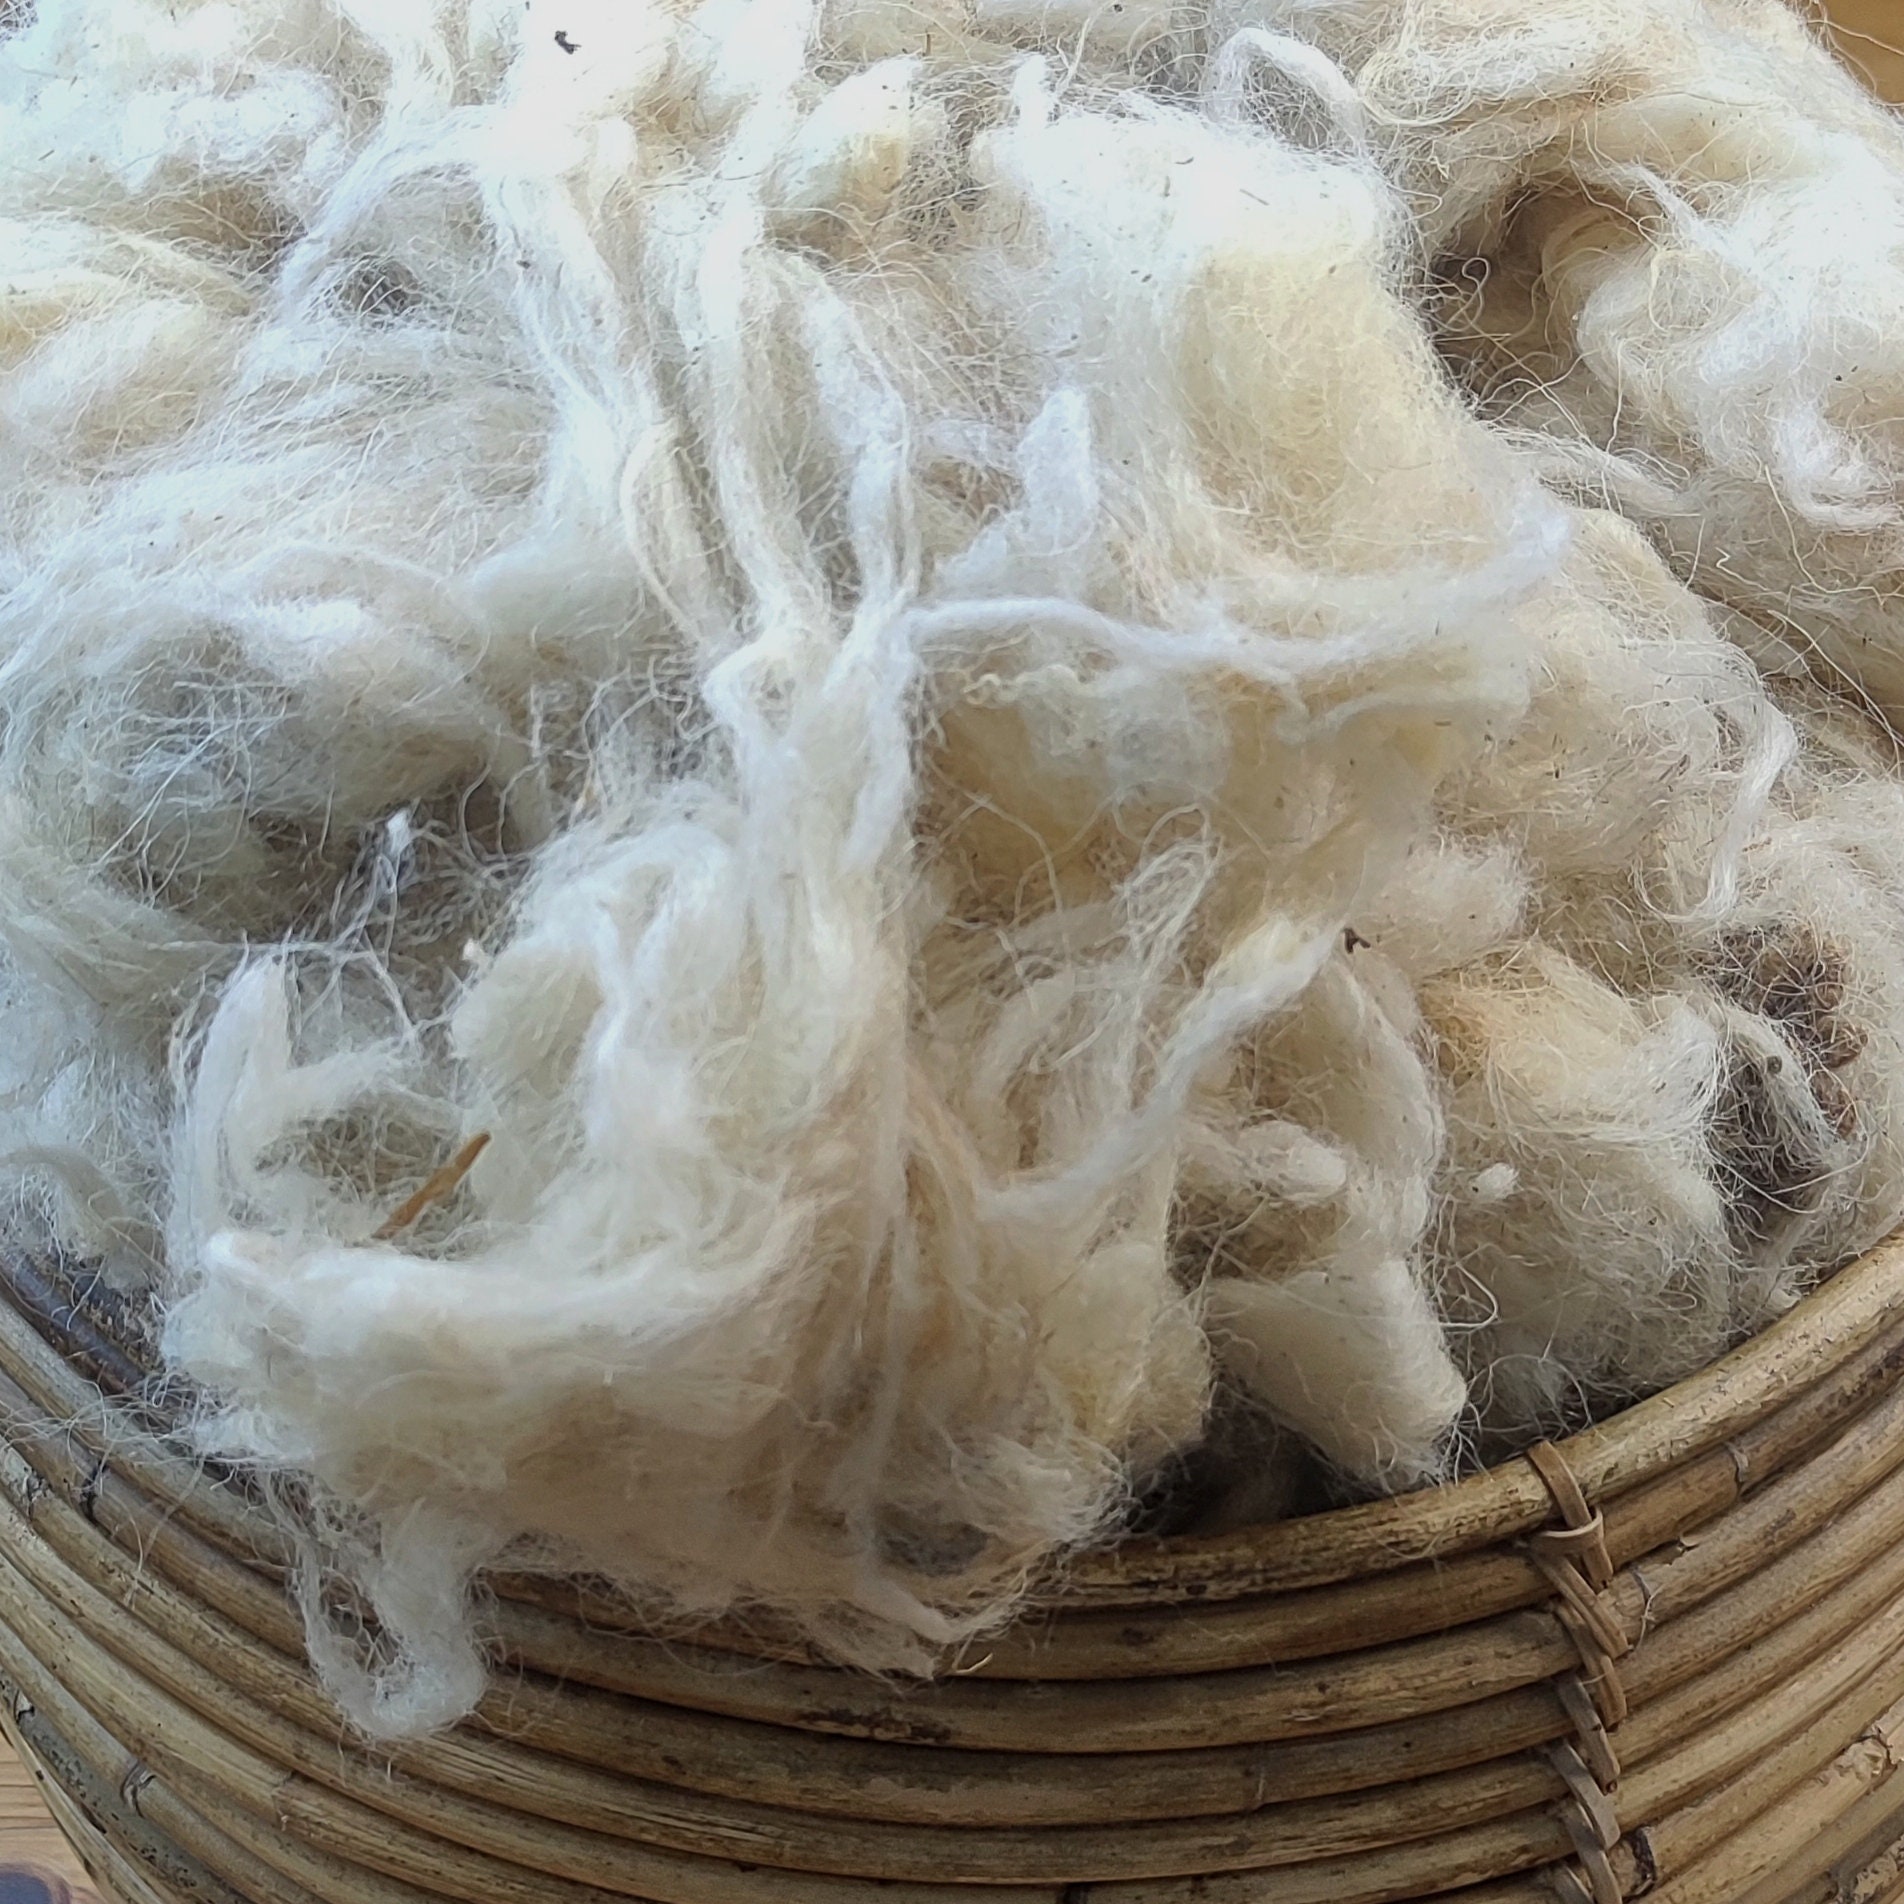 Wool Roving for Felting, Raw Wool Felt, Wool Batting, Brown Chunky